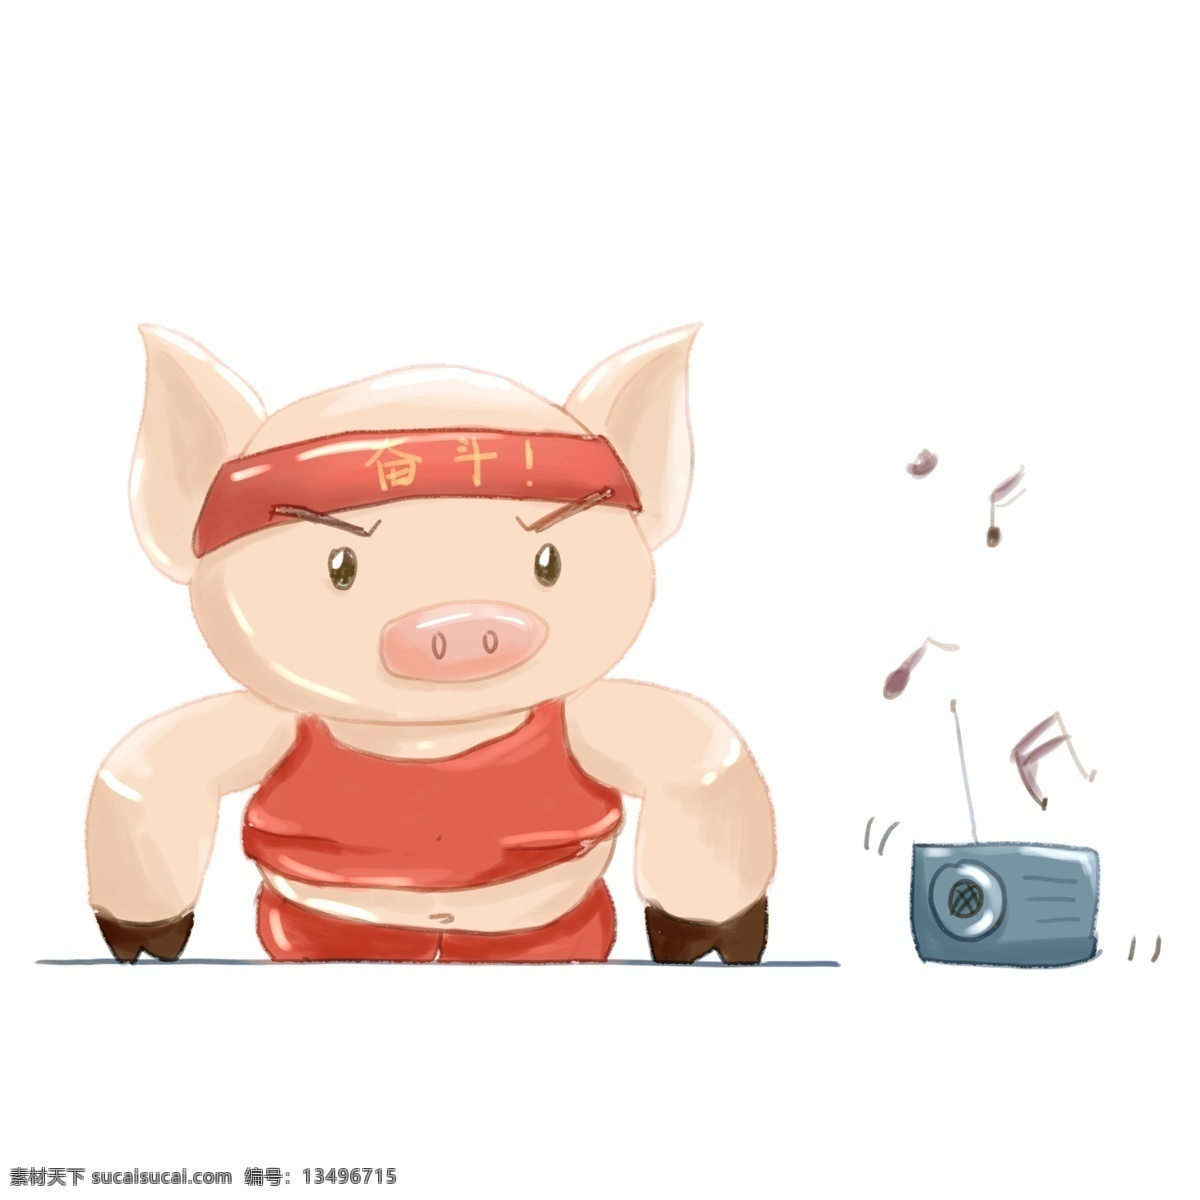 卡通 可爱 小胖 猪 锻炼 身体 拟人 手绘 商用 可商用 锻炼身体 小猪 肥胖